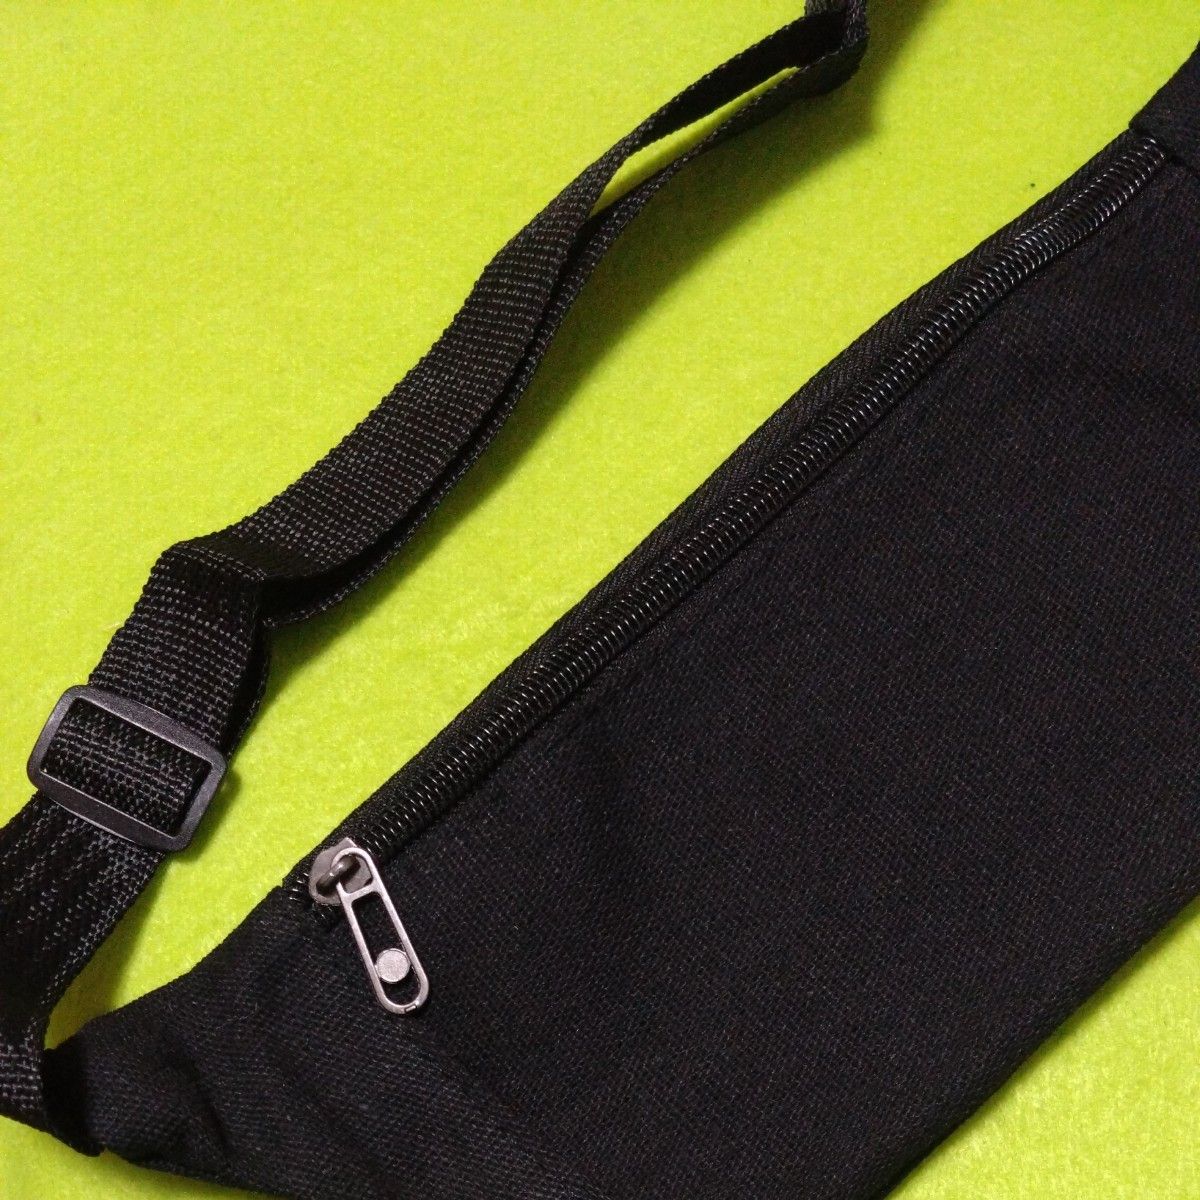 メンズ ウエストバッグ  斜めがけバッグ 携帯電話バッグ アウトドア スポーツ  ランニング 黒色 ウエストポーチ ヒップバッグ